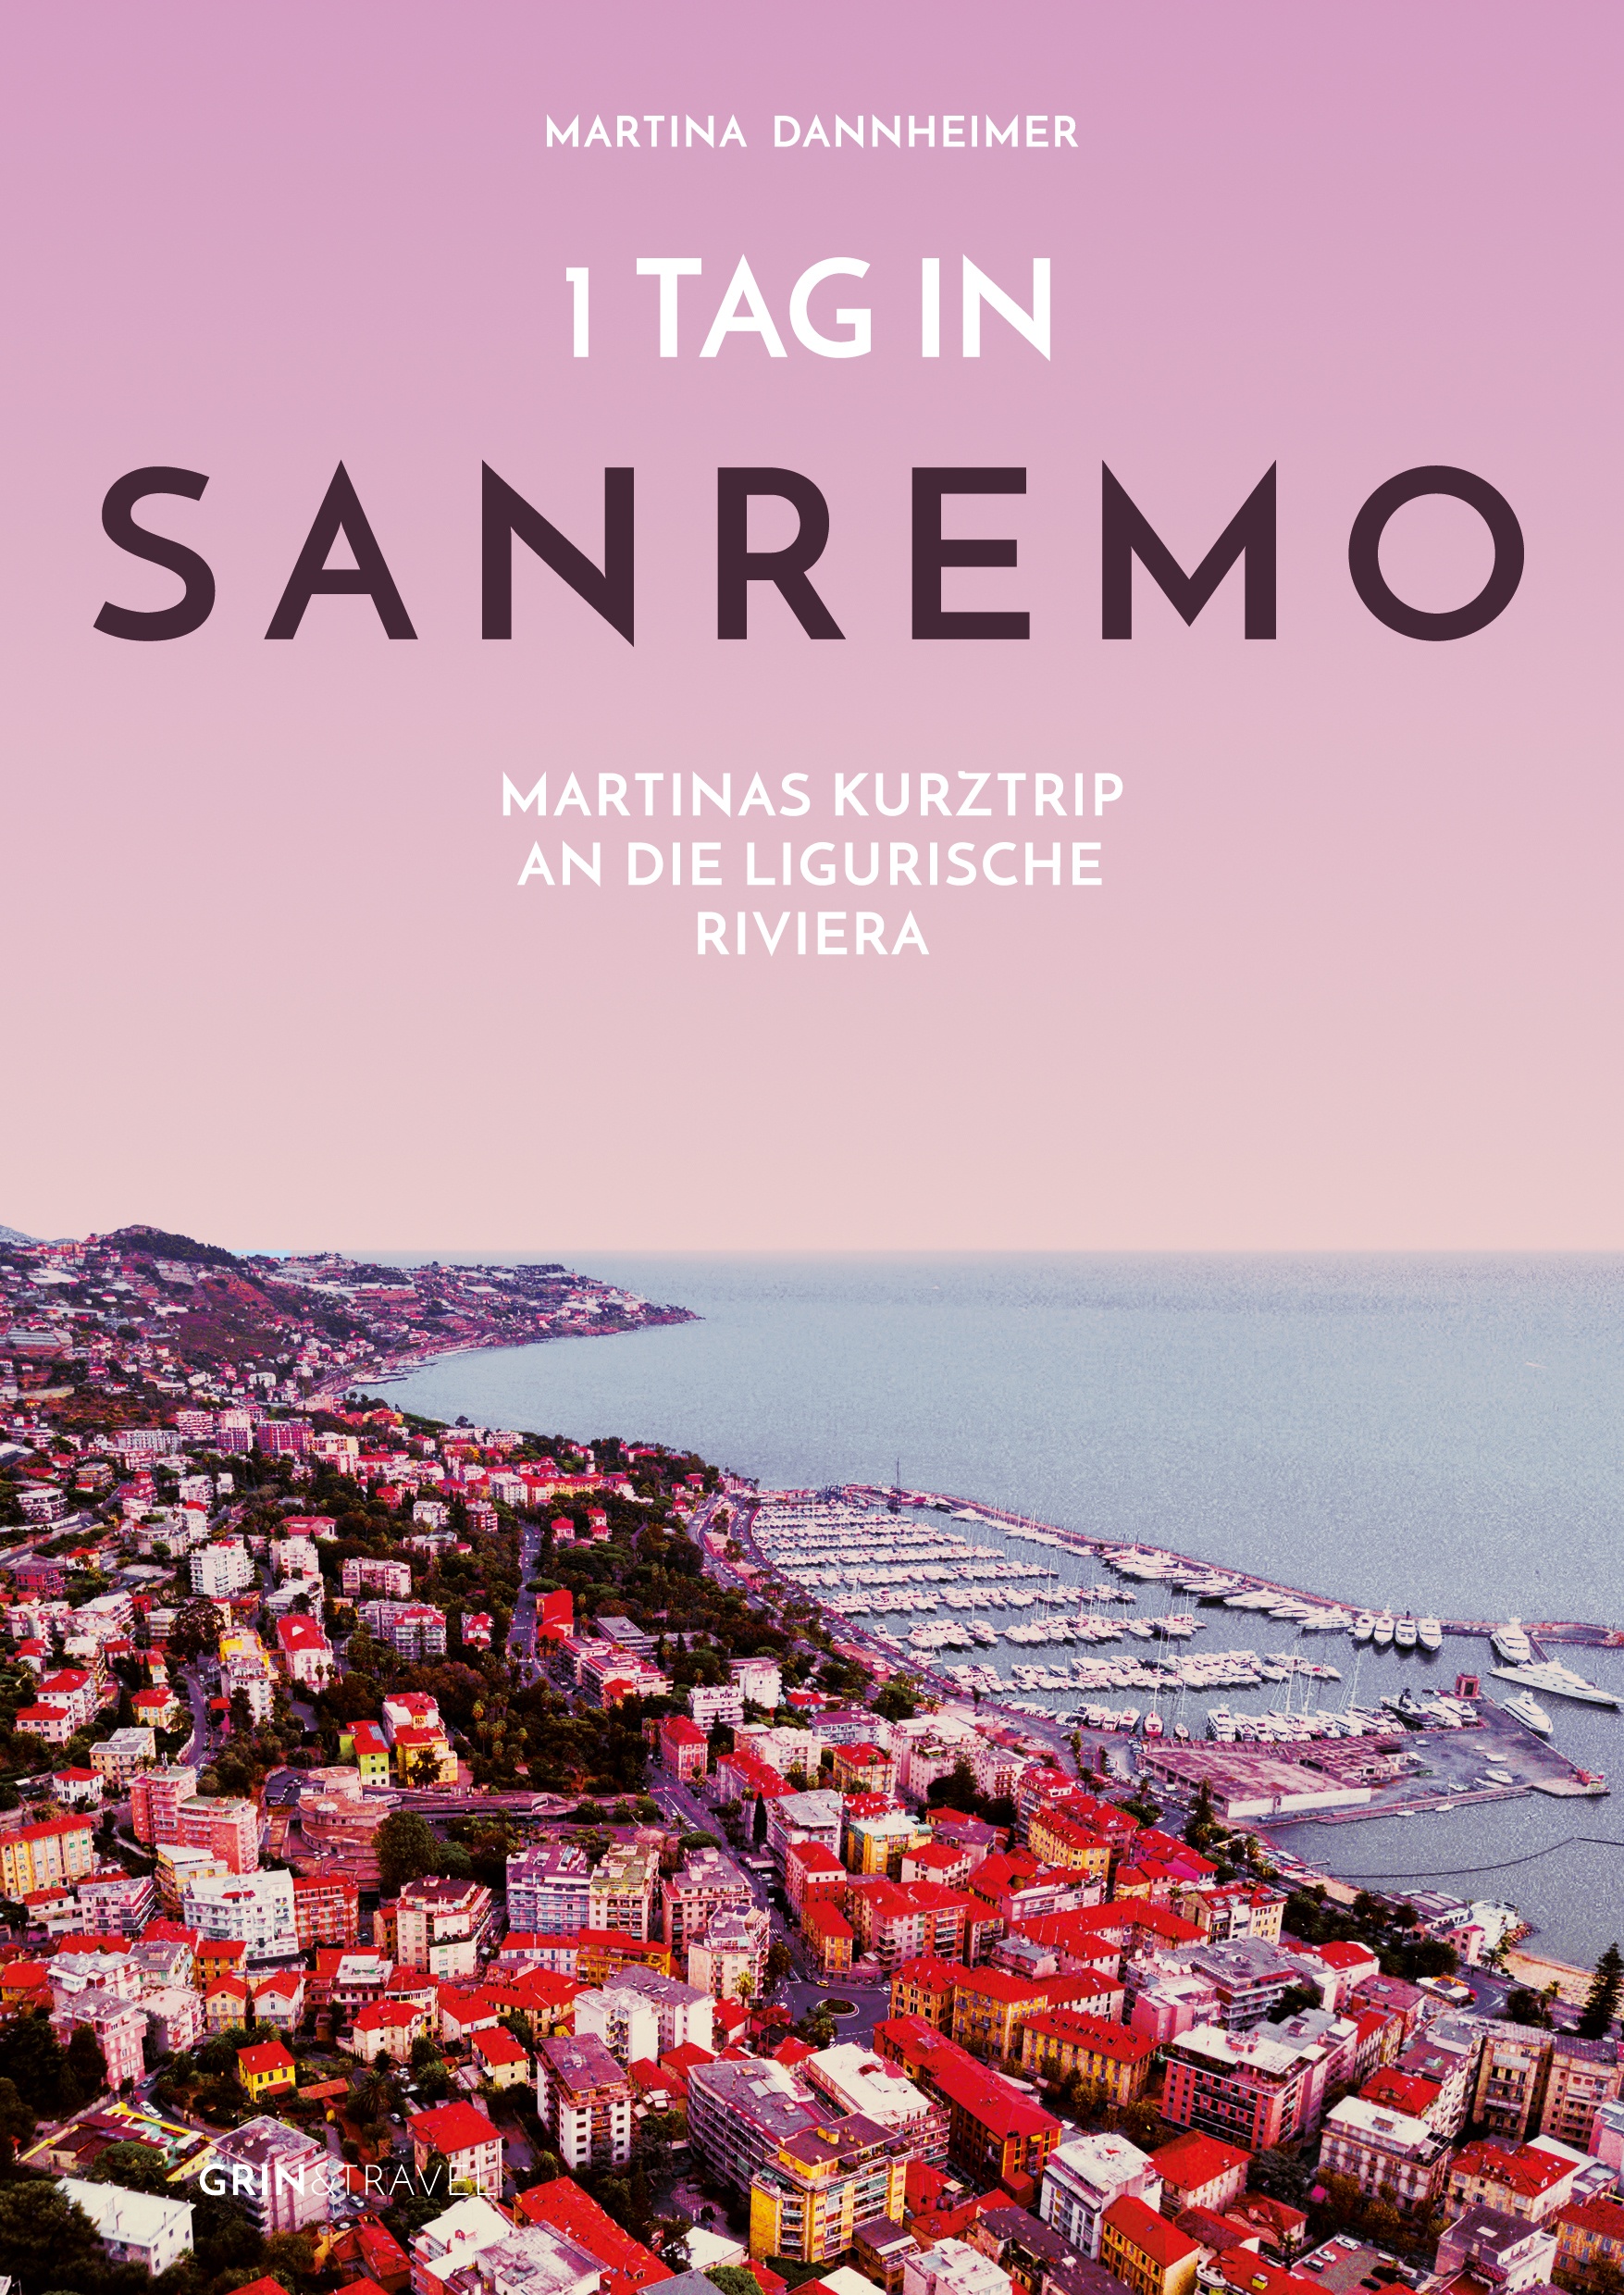 Title: 1 Tag in Sanremo